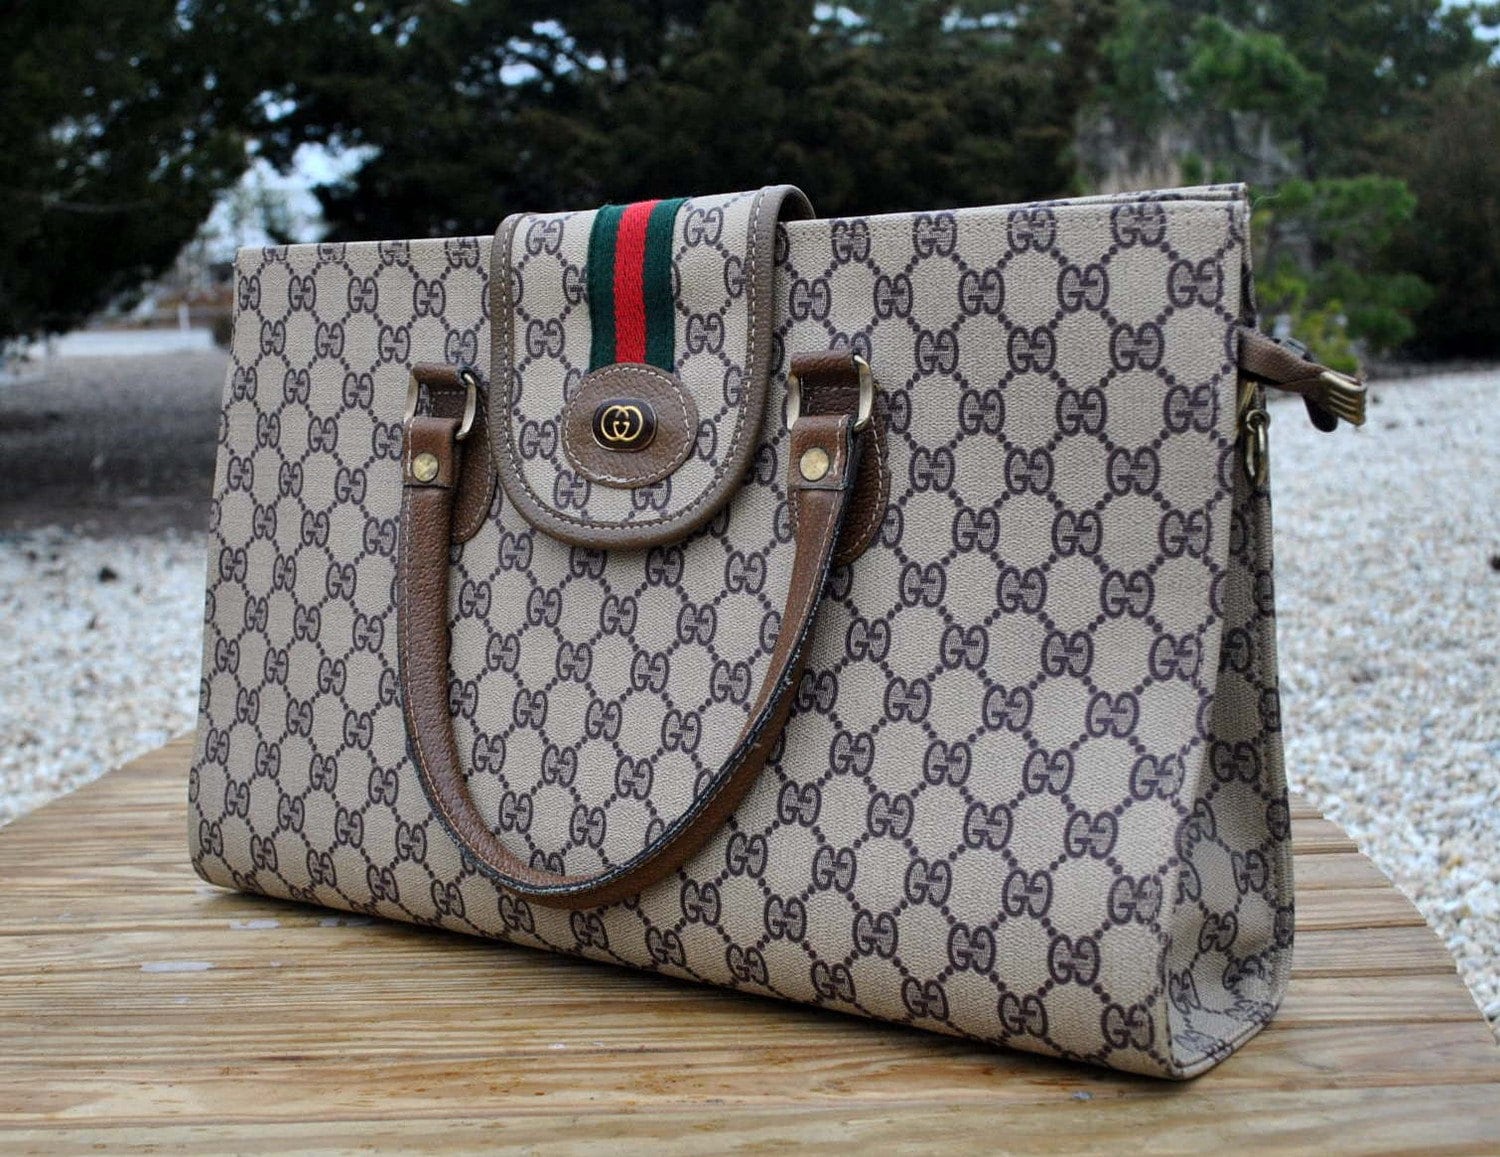 Vintage 1980s Gucci Handbag or Laptop Bag